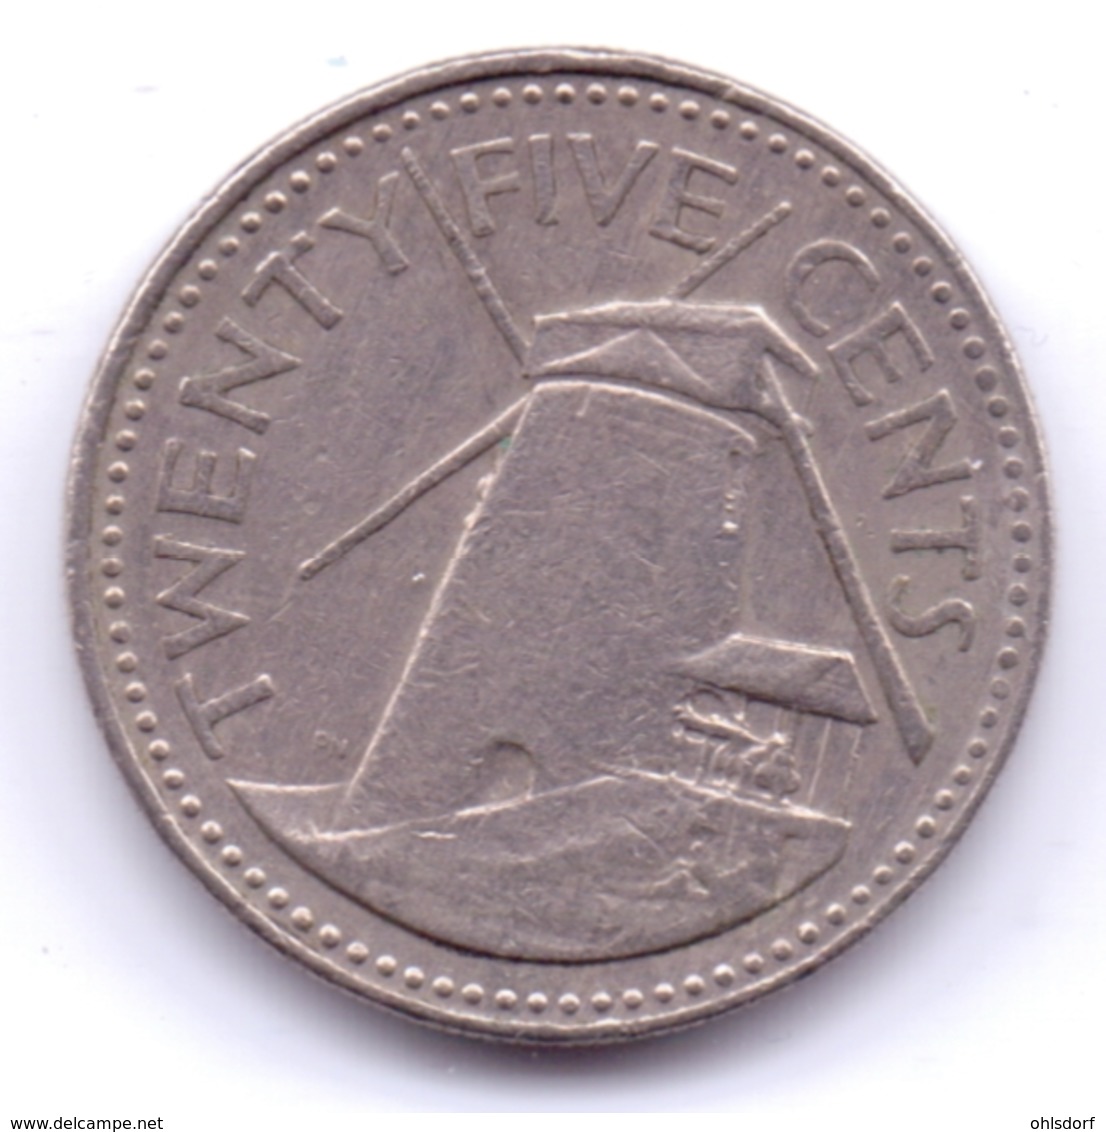 BARBADOS 1980: 25 Cents, KM 13 - Barbados